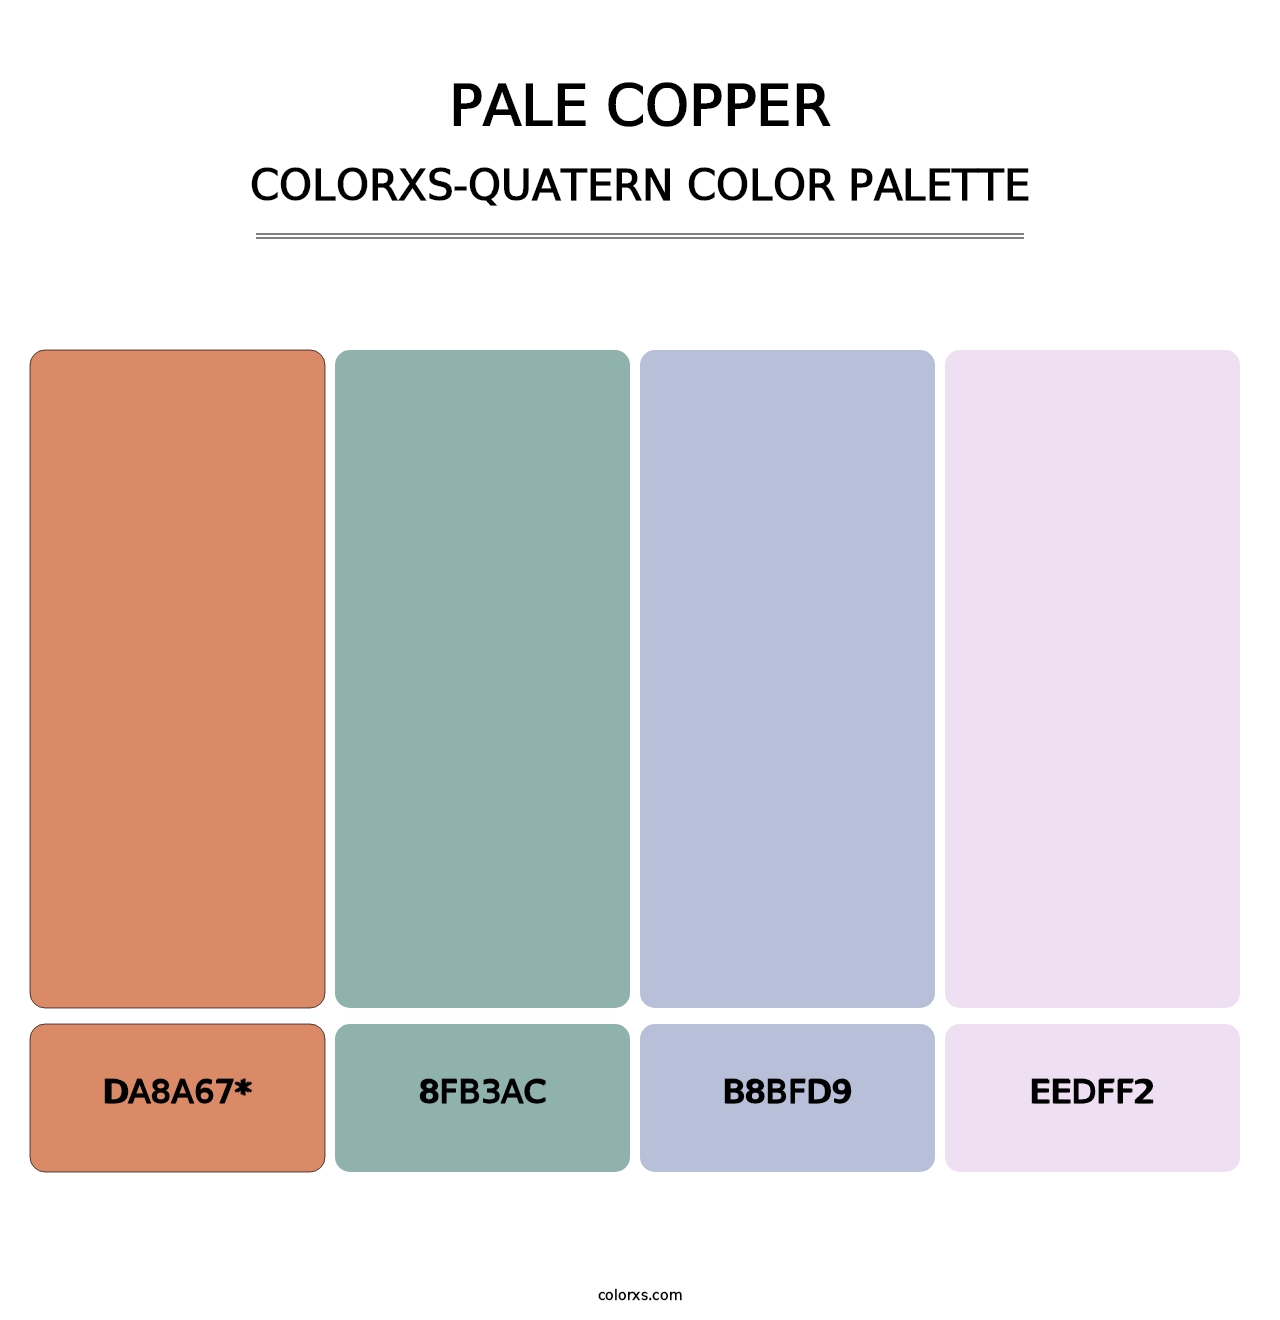 Pale Copper - Colorxs Quatern Palette